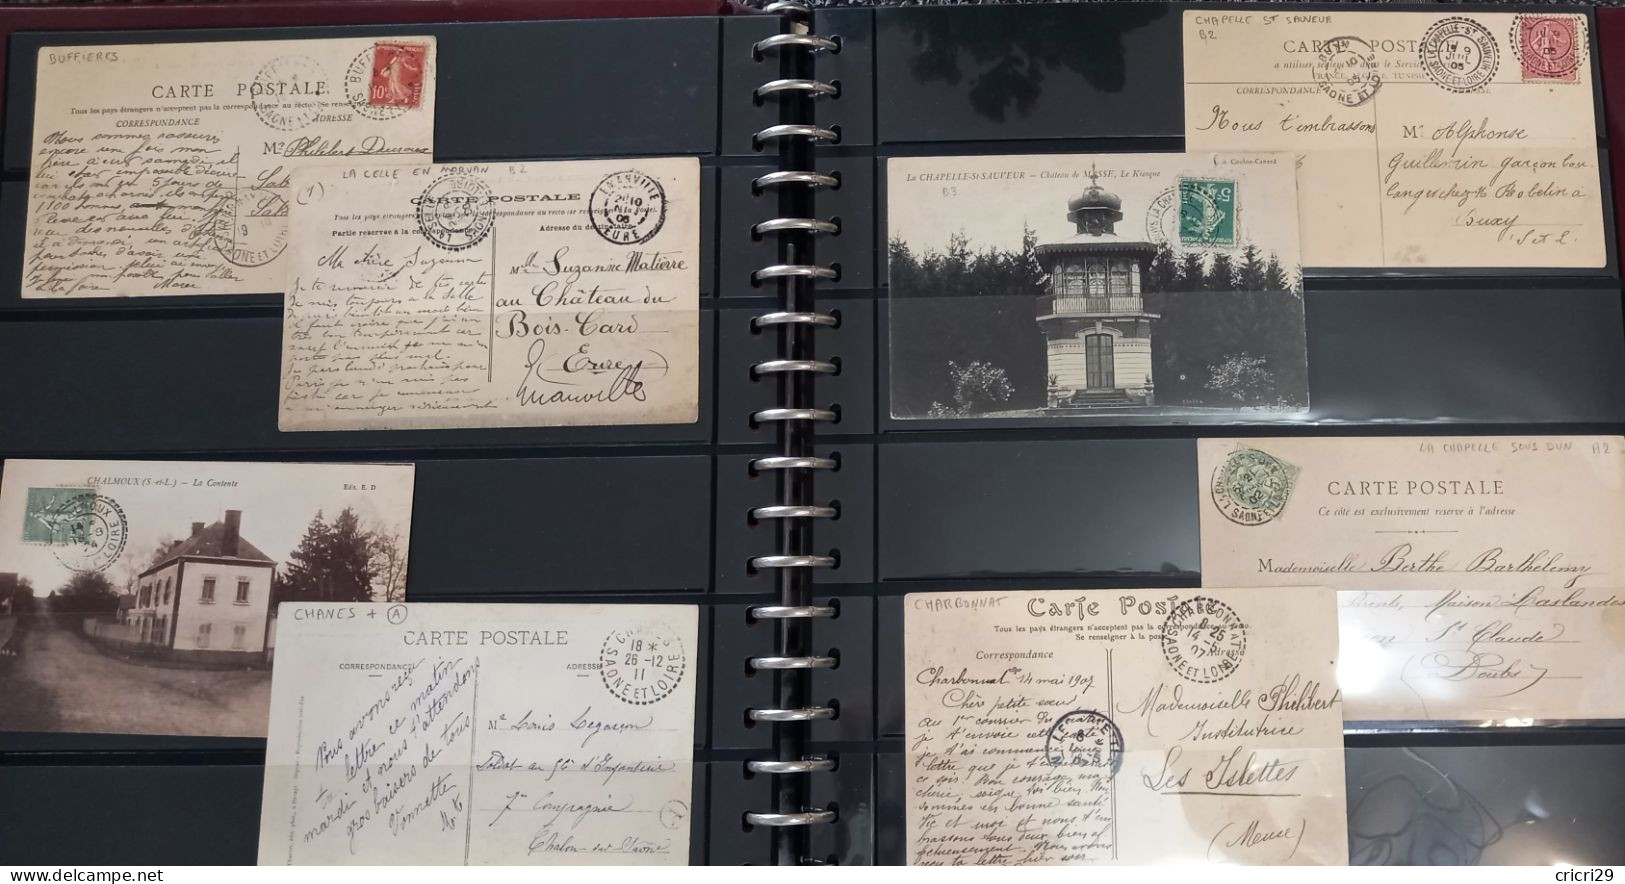 SAONE & LOIRE : lot de 142 Lettres ou Cartes Postales avec Oblitérations des Petits Bureaux de Saône et Loire